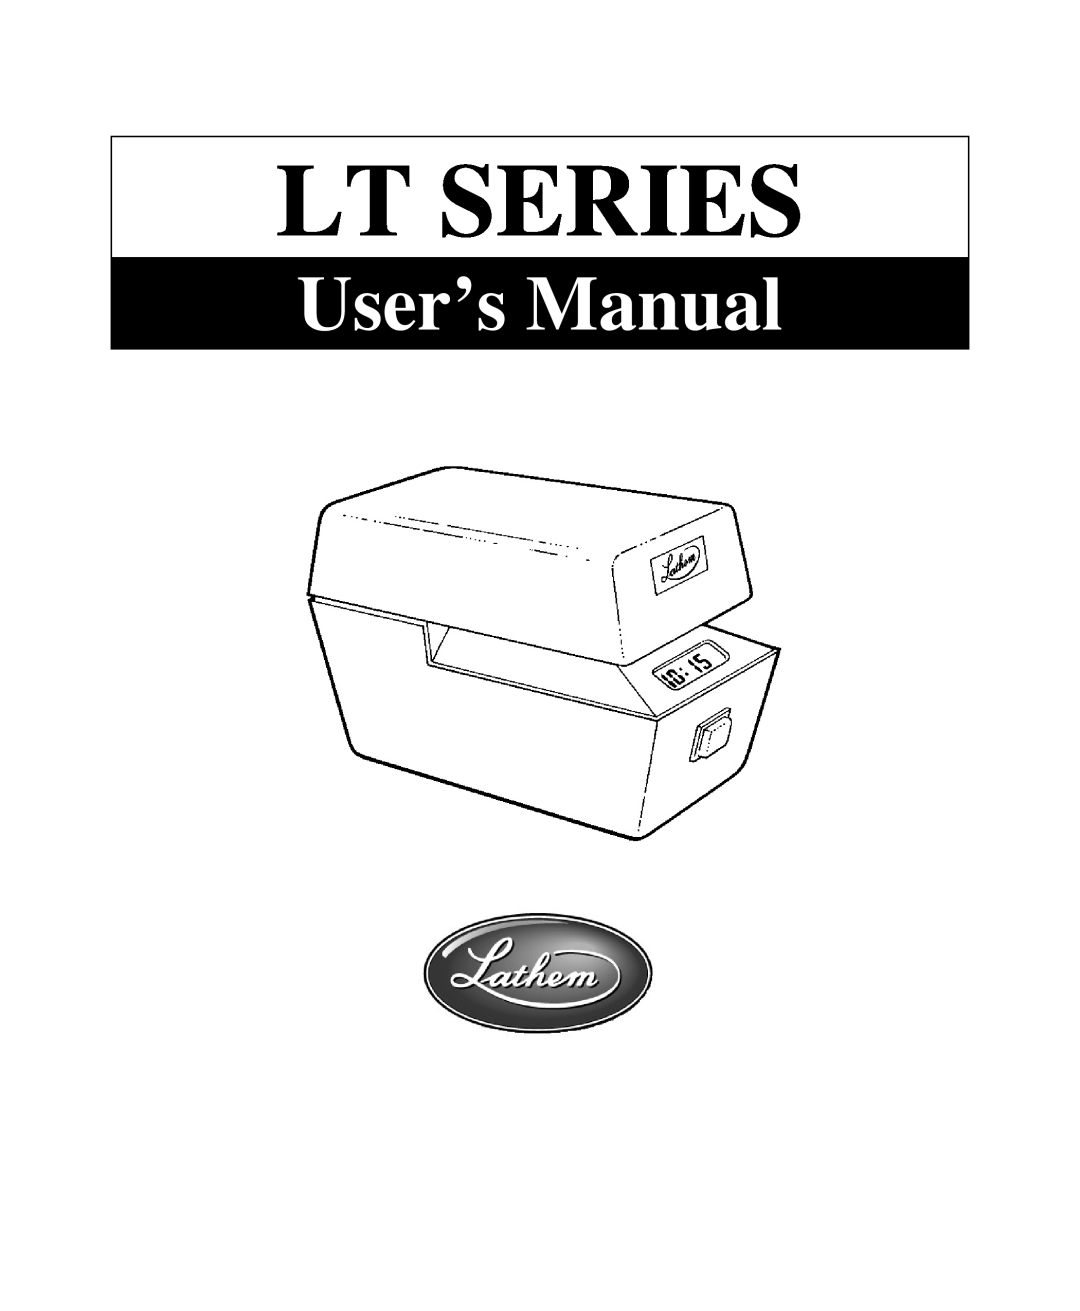 Lathem LTN, LTTNC, LTD, LT Series, LTTC user manual Lt Series, User’s Manual 